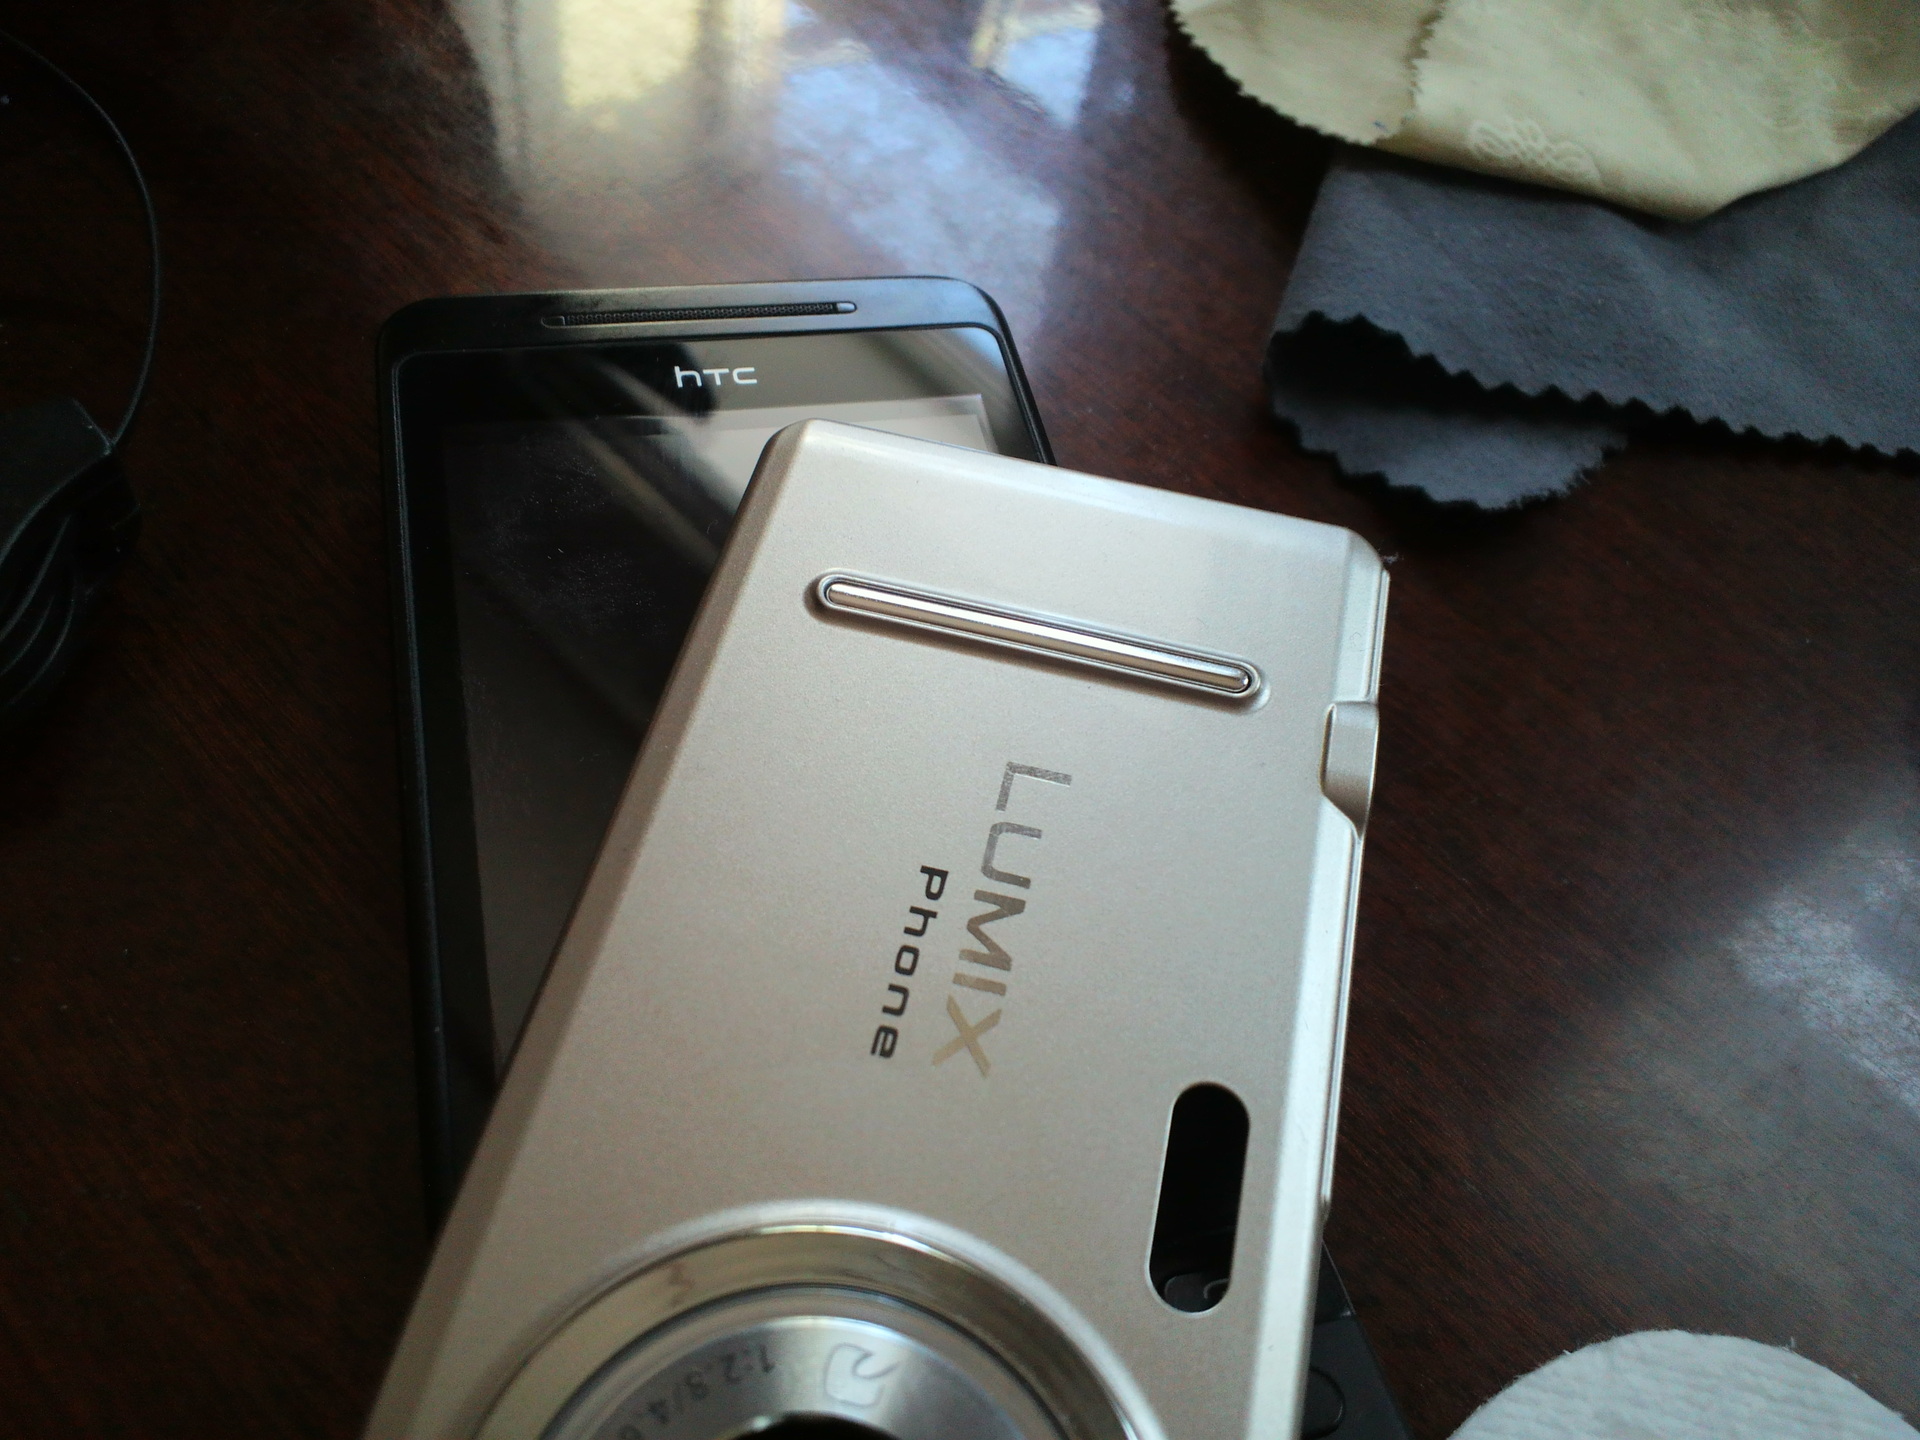 Panasonic Lumix phone